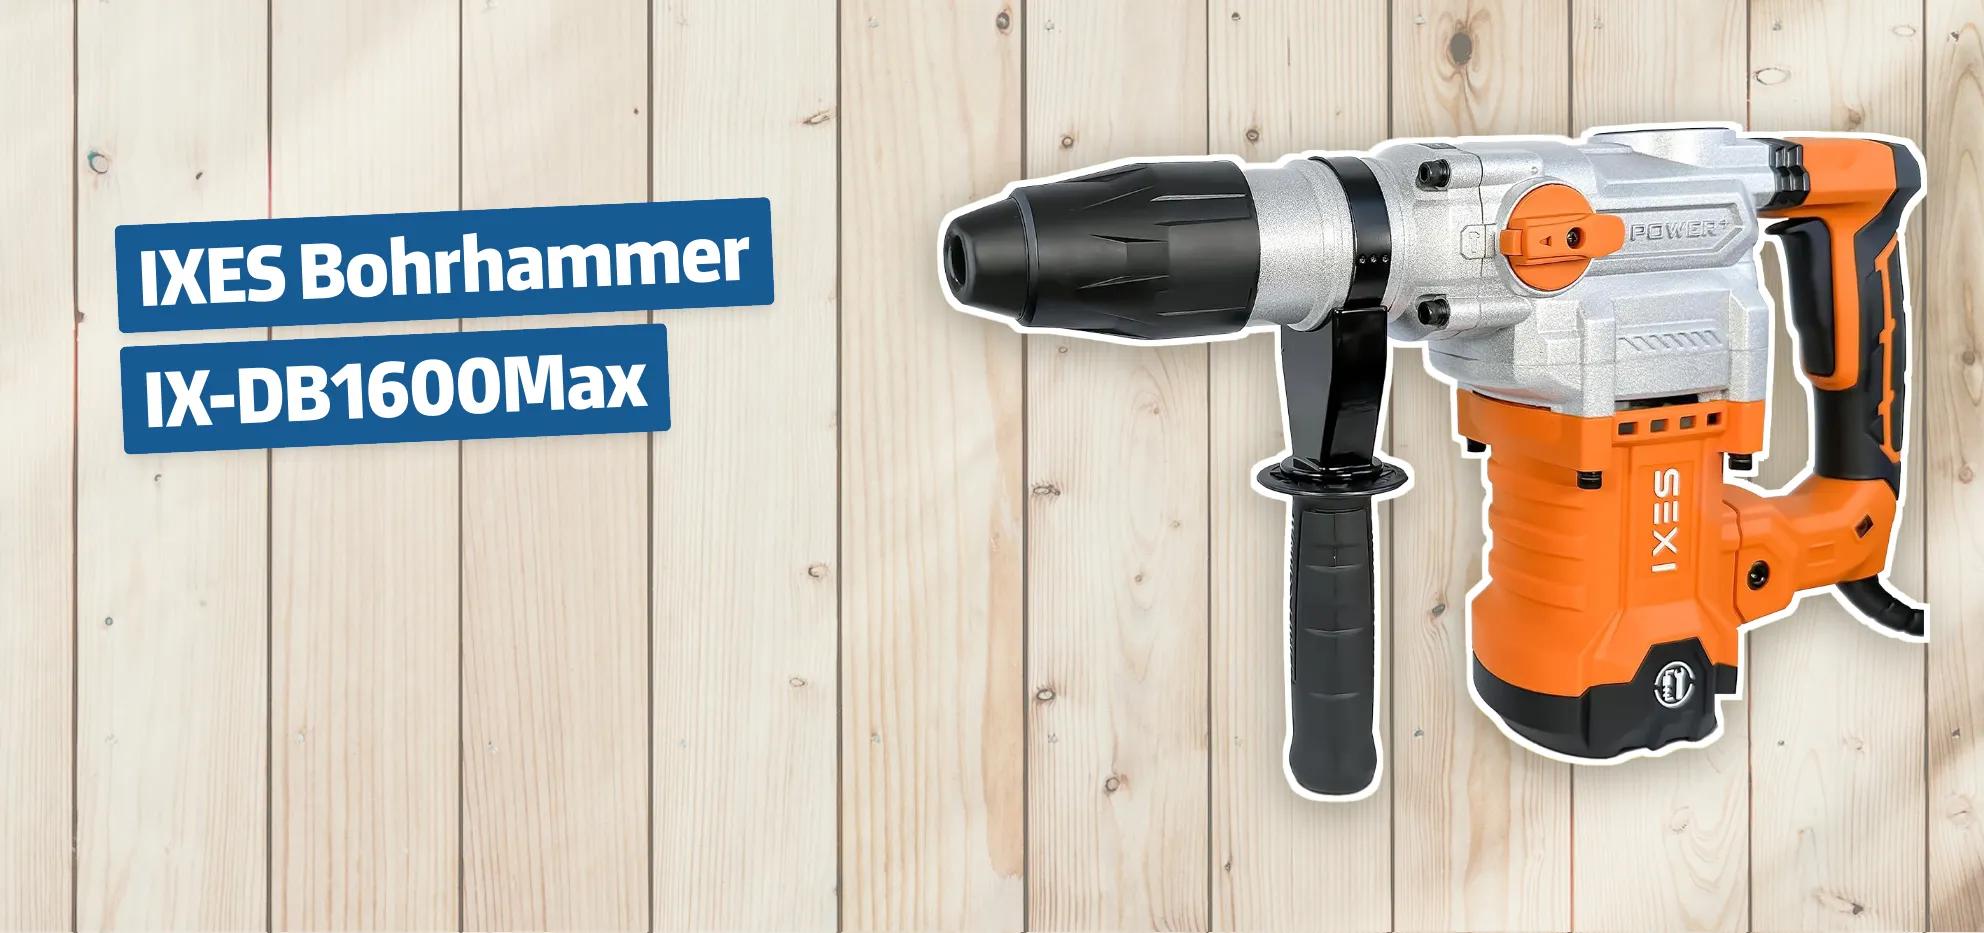 IXES Bohrhammer IX-DB1600Max